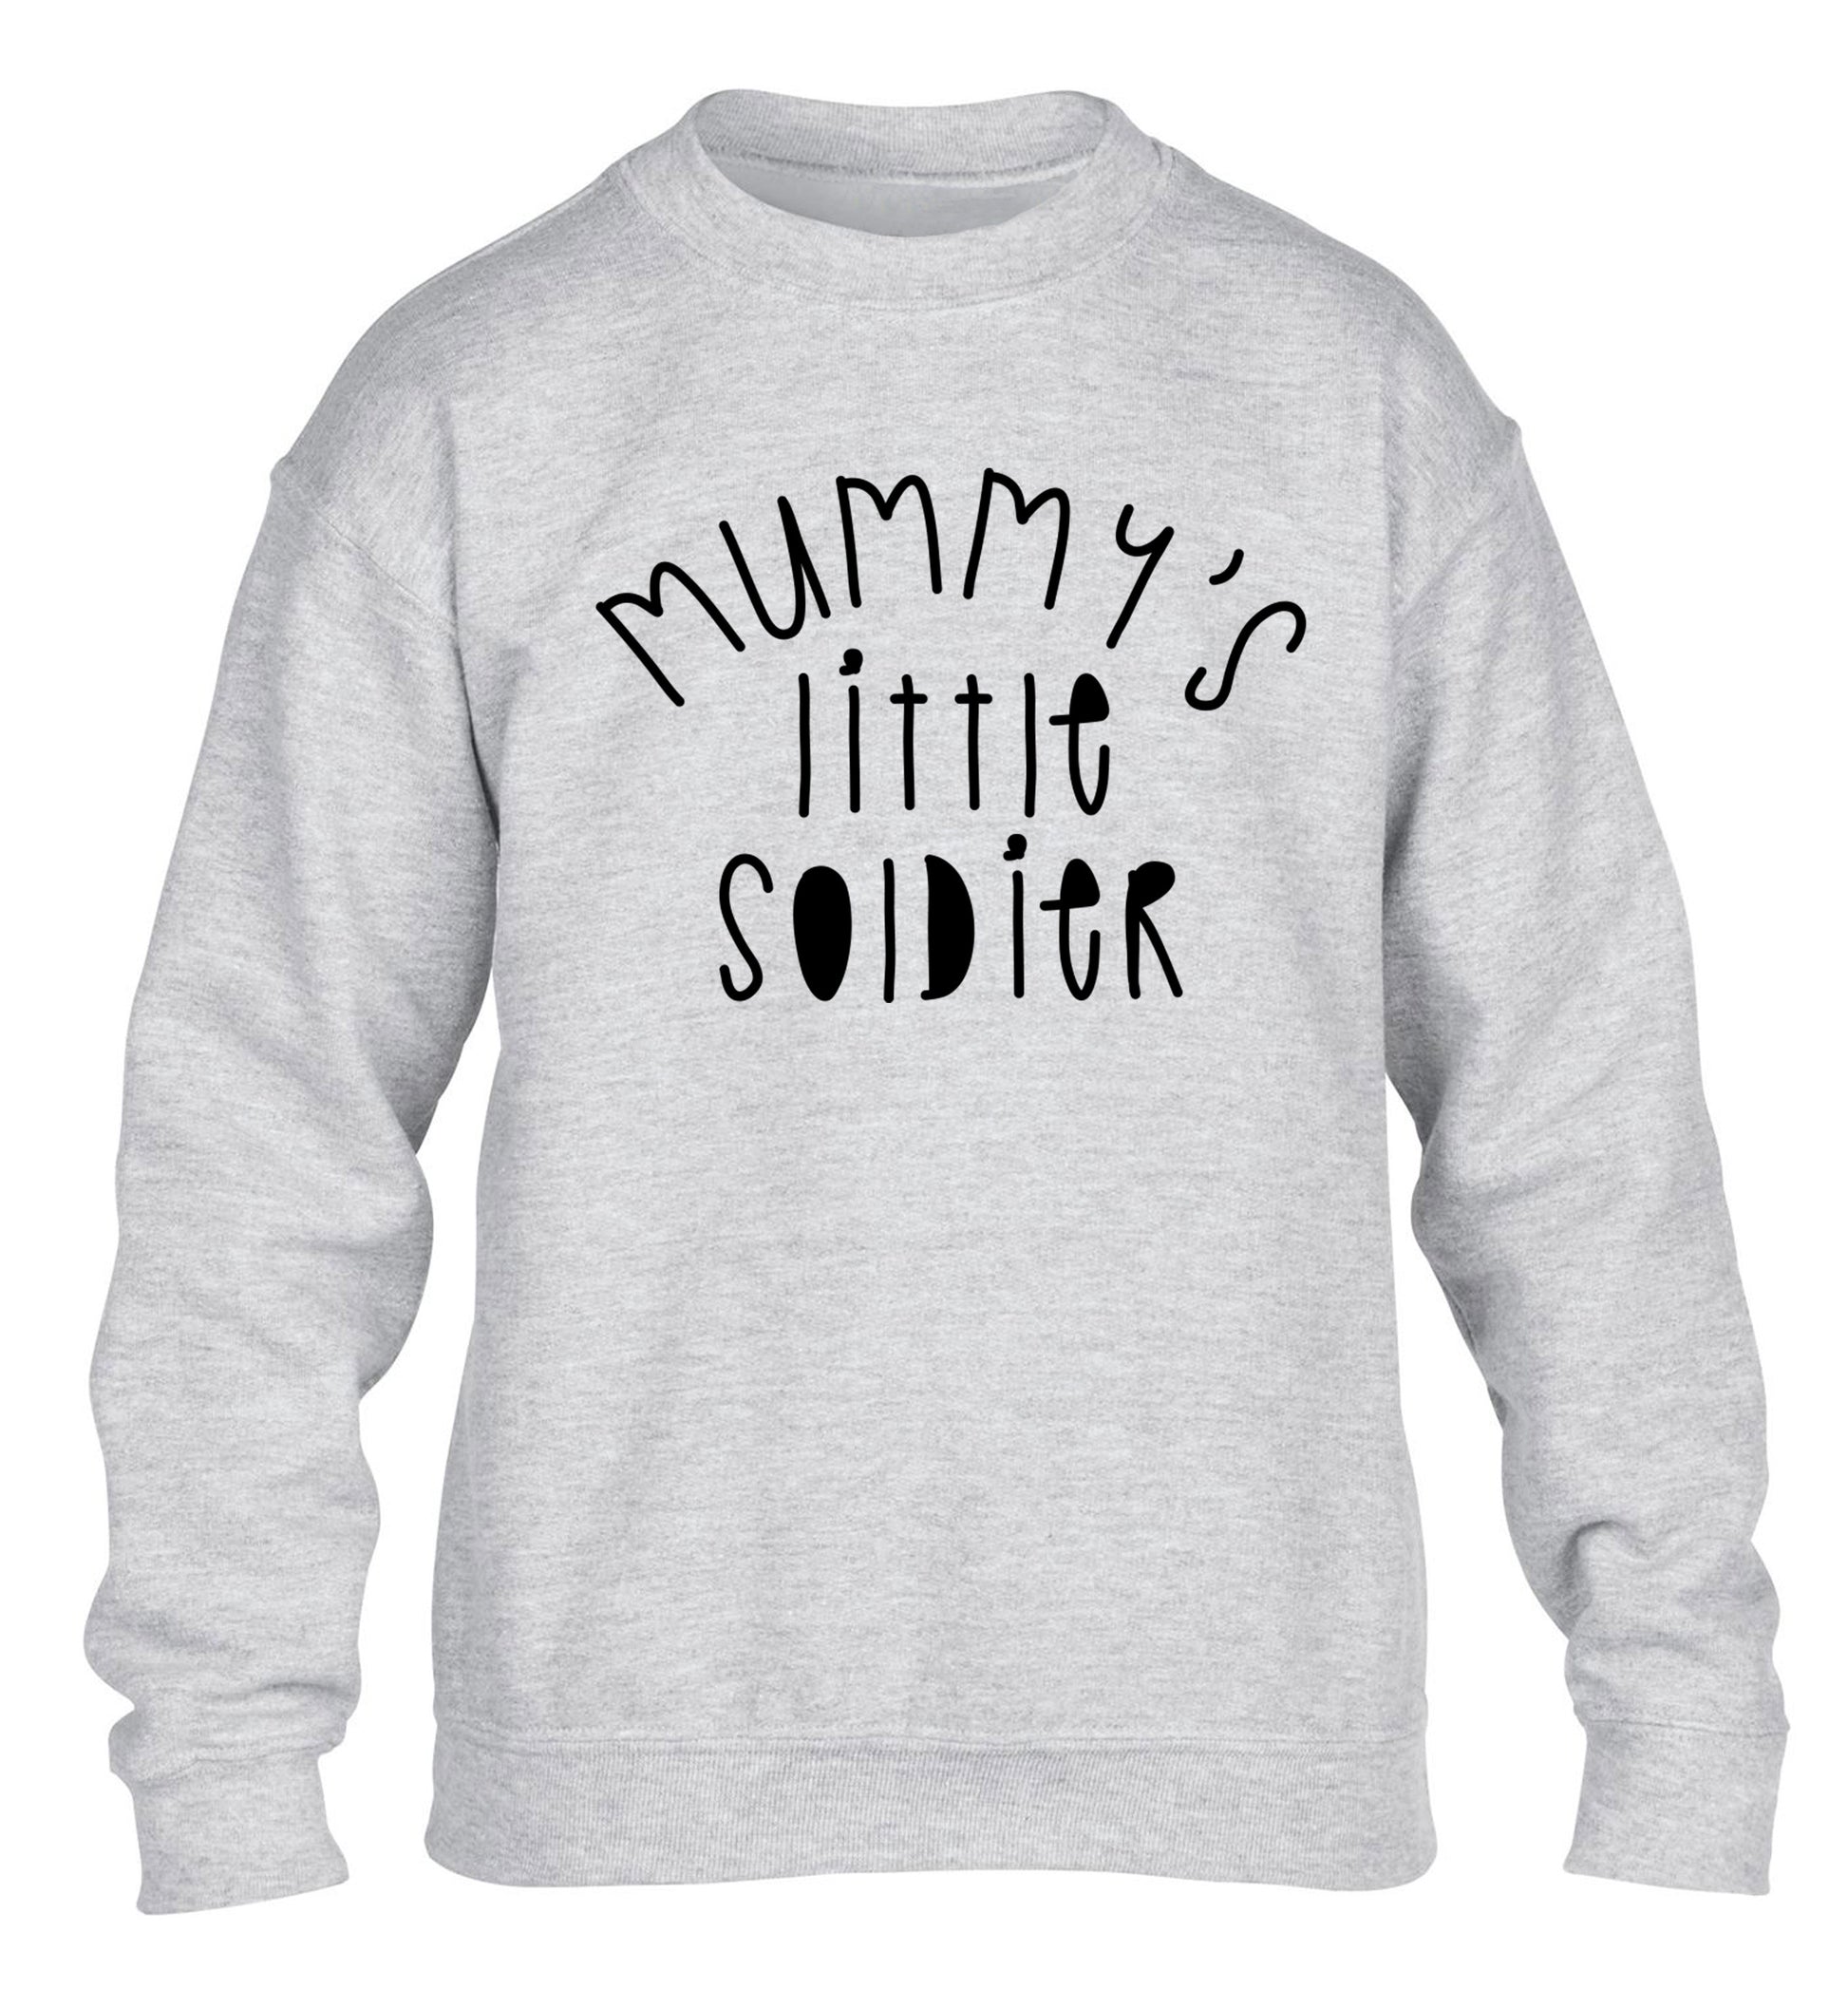 Mummy's little soldier children's grey sweater 12-14 Years